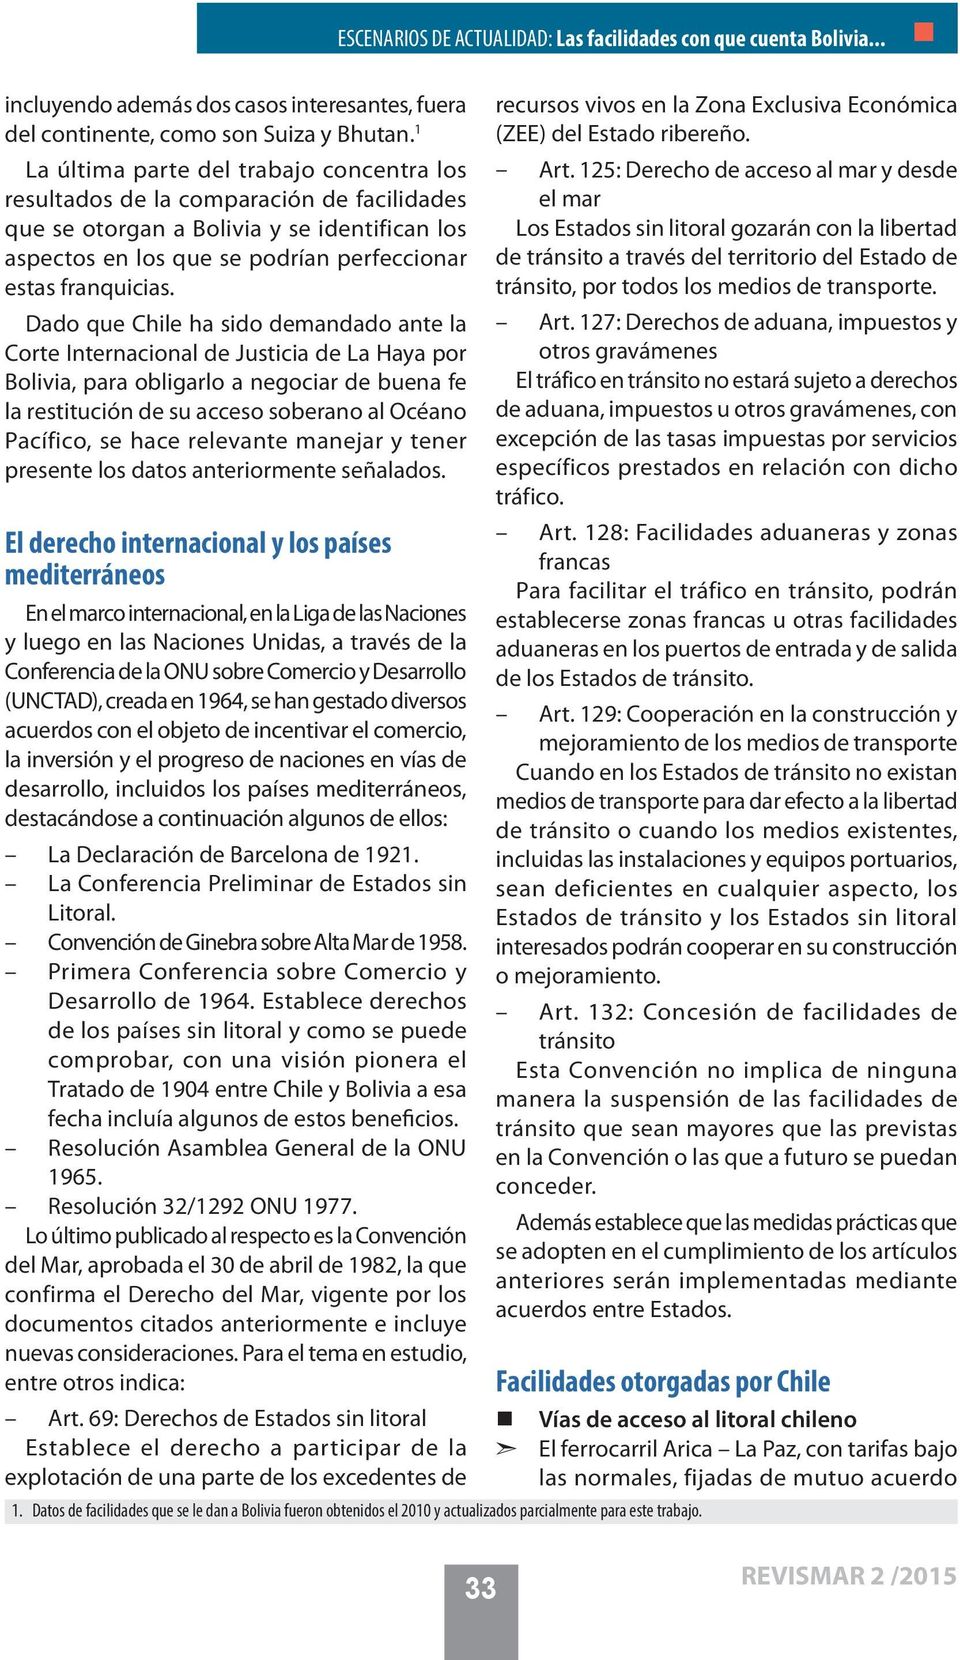 Dado que Chile ha sido demandado ante la Corte Internacional de Justicia de La Haya por Bolivia, para obligarlo a negociar de buena fe la restitución de su acceso soberano al Océano Pacífico, se hace